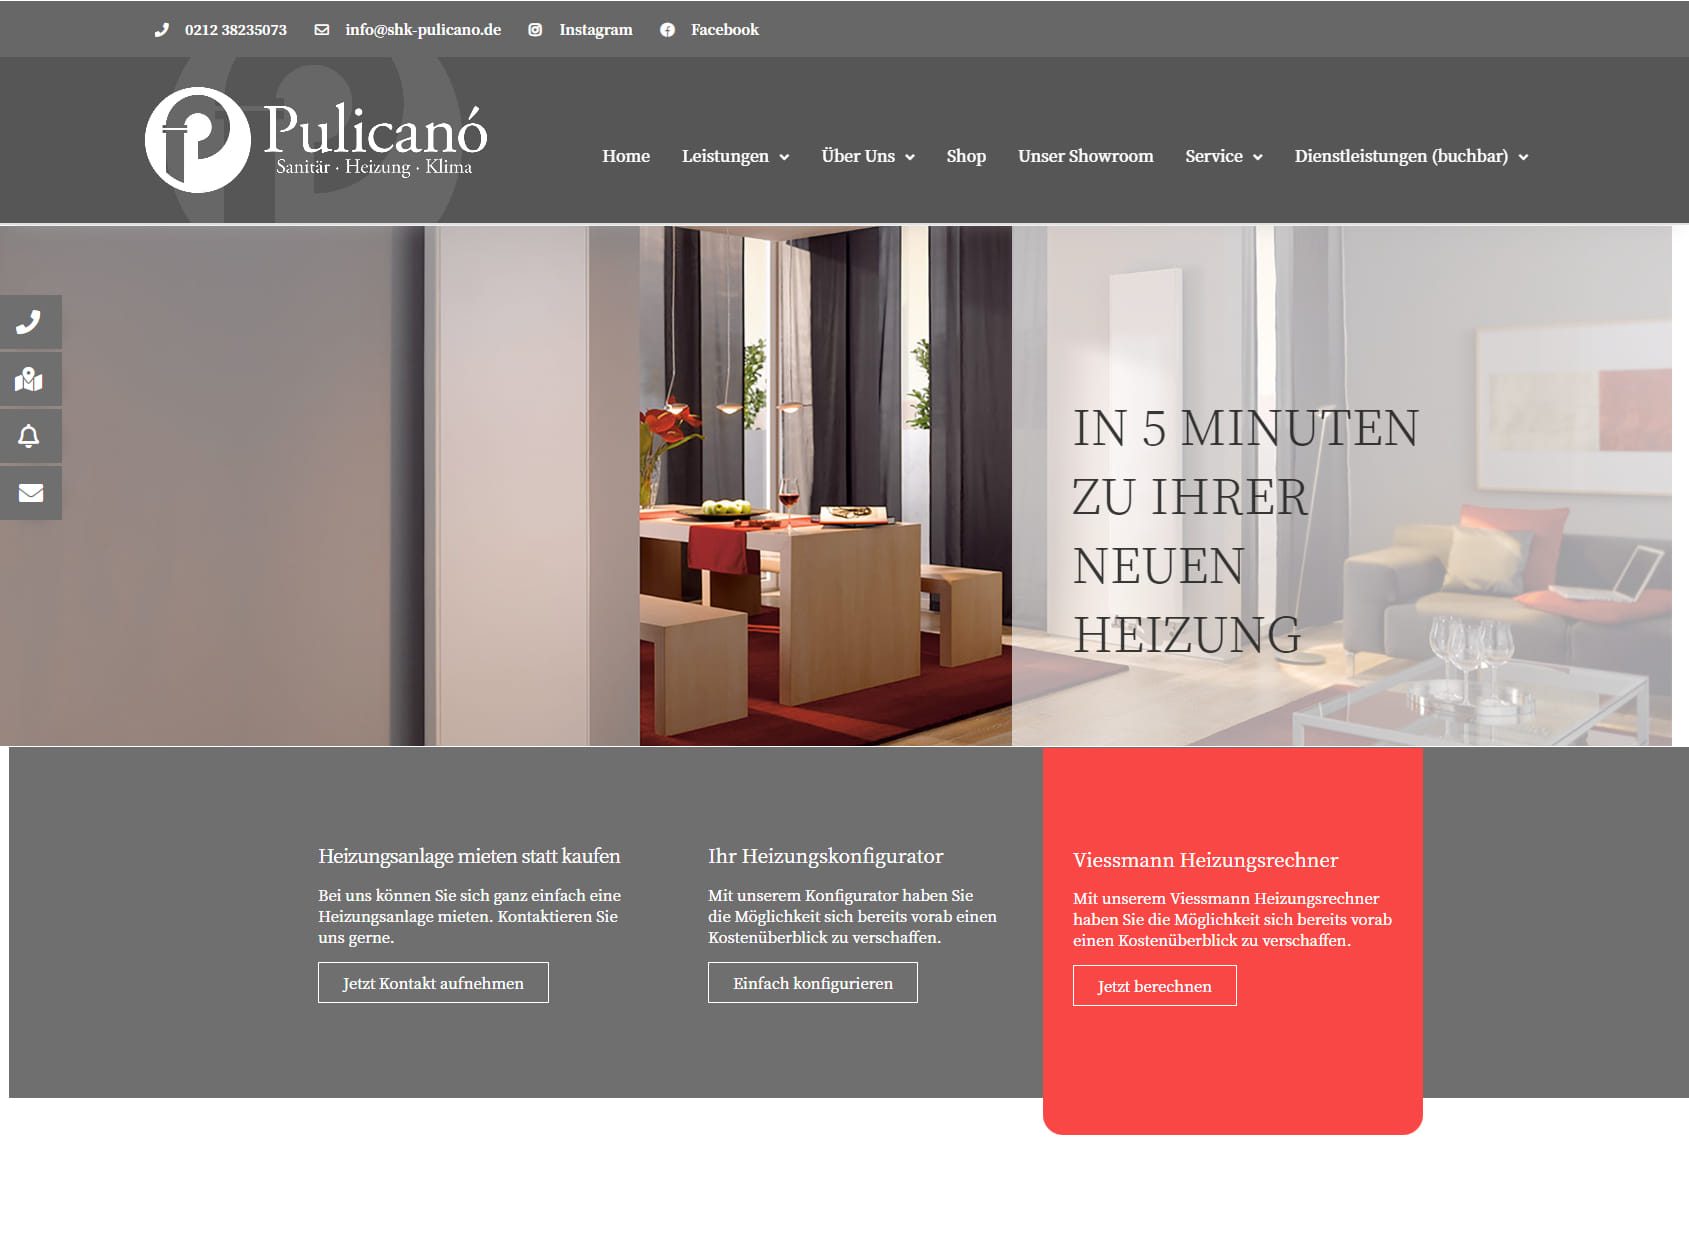 D. Pulicanó GmbH